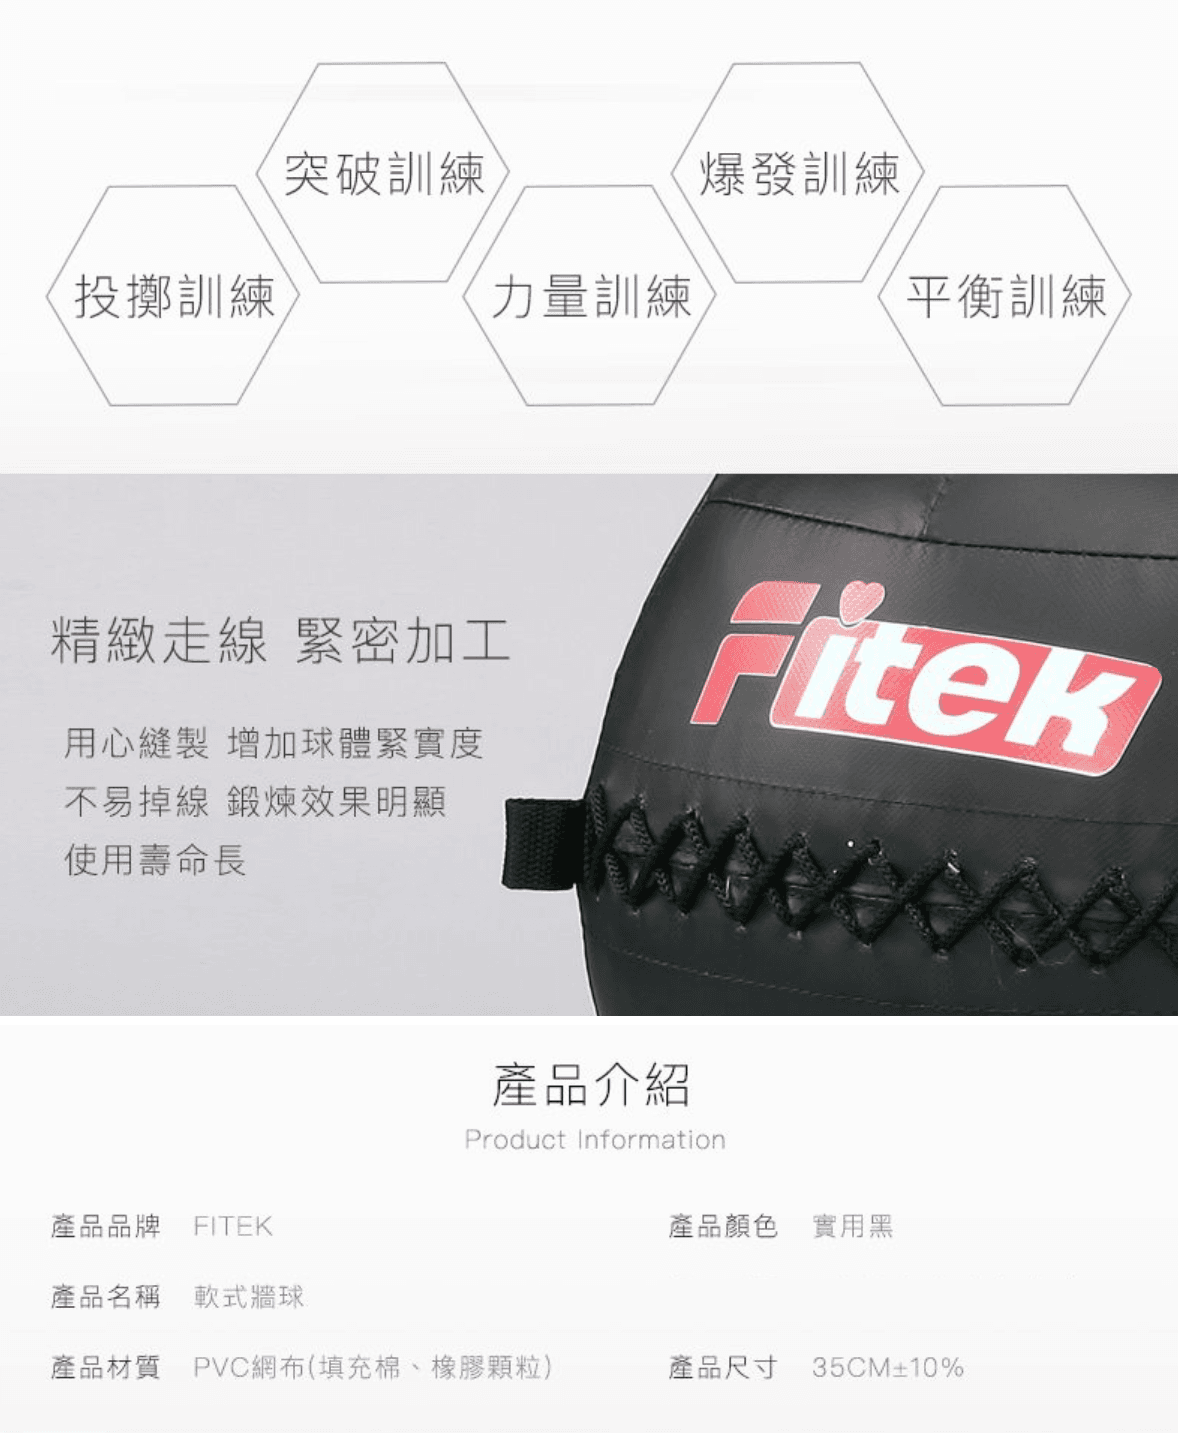 軟式藥球牆球9KG【Fitek】 4